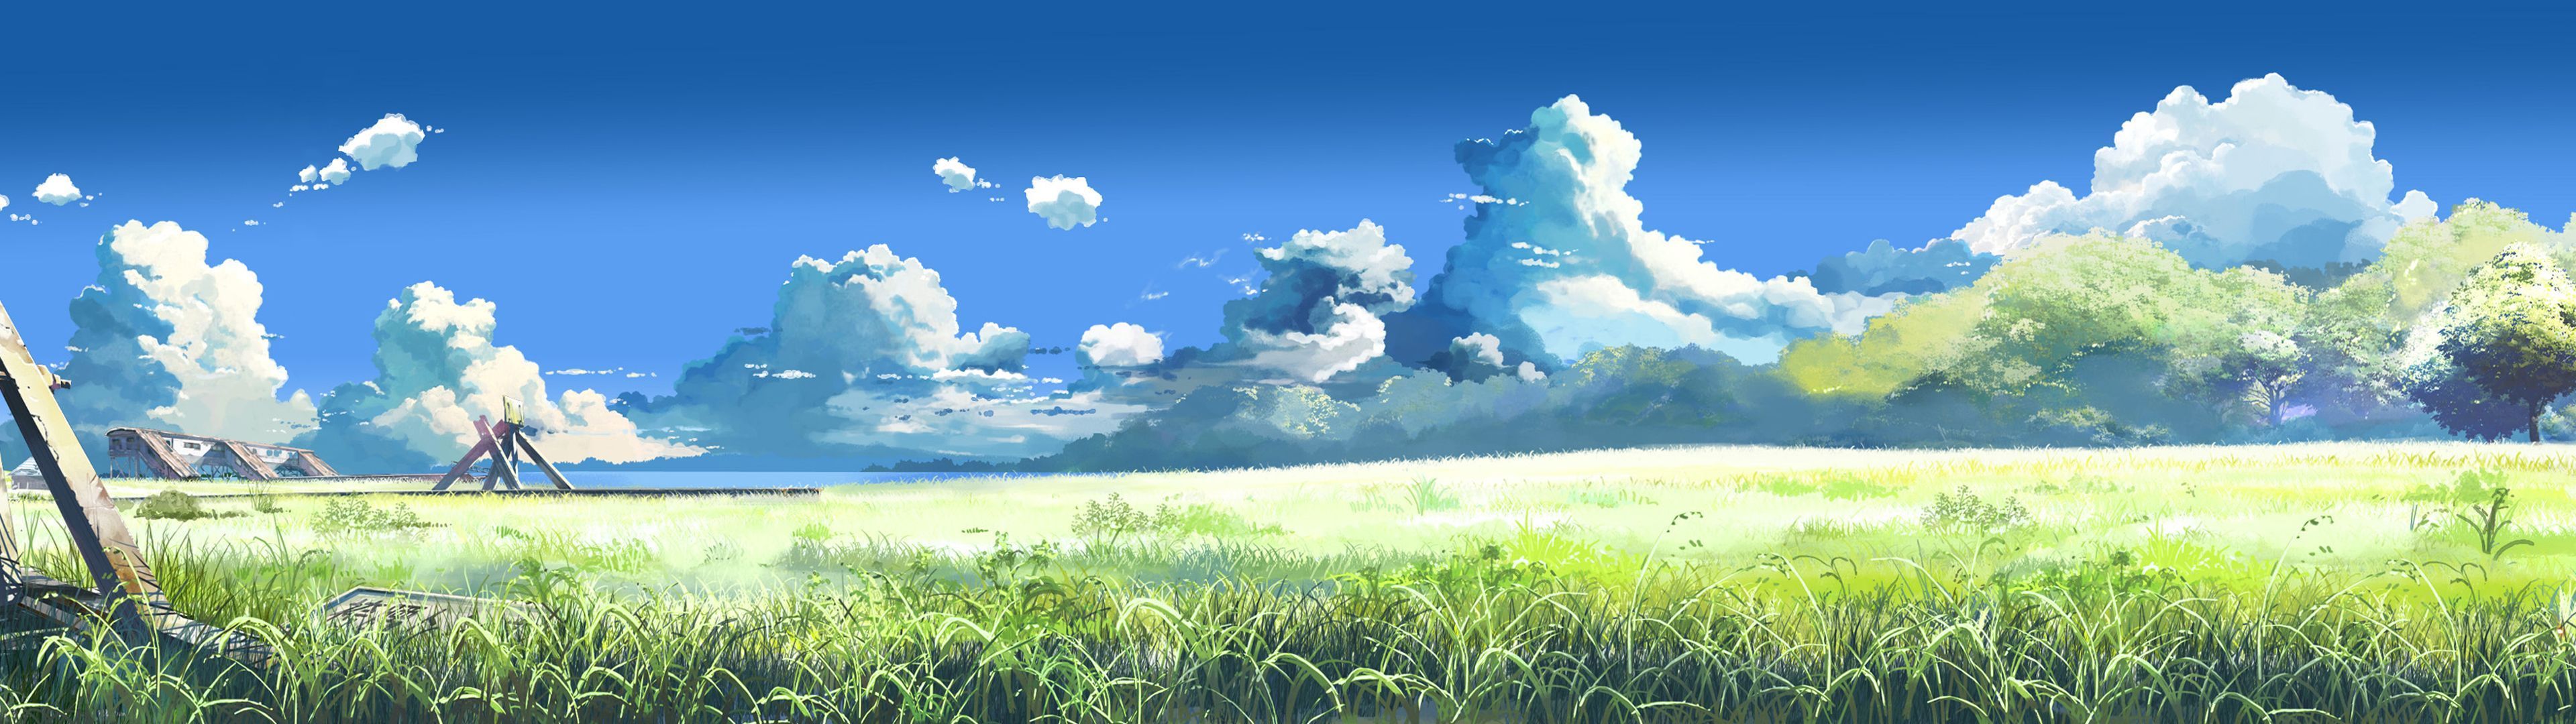 Anime Scenery Dual Screen Wallpaper | 3840x1080 | ID:43355